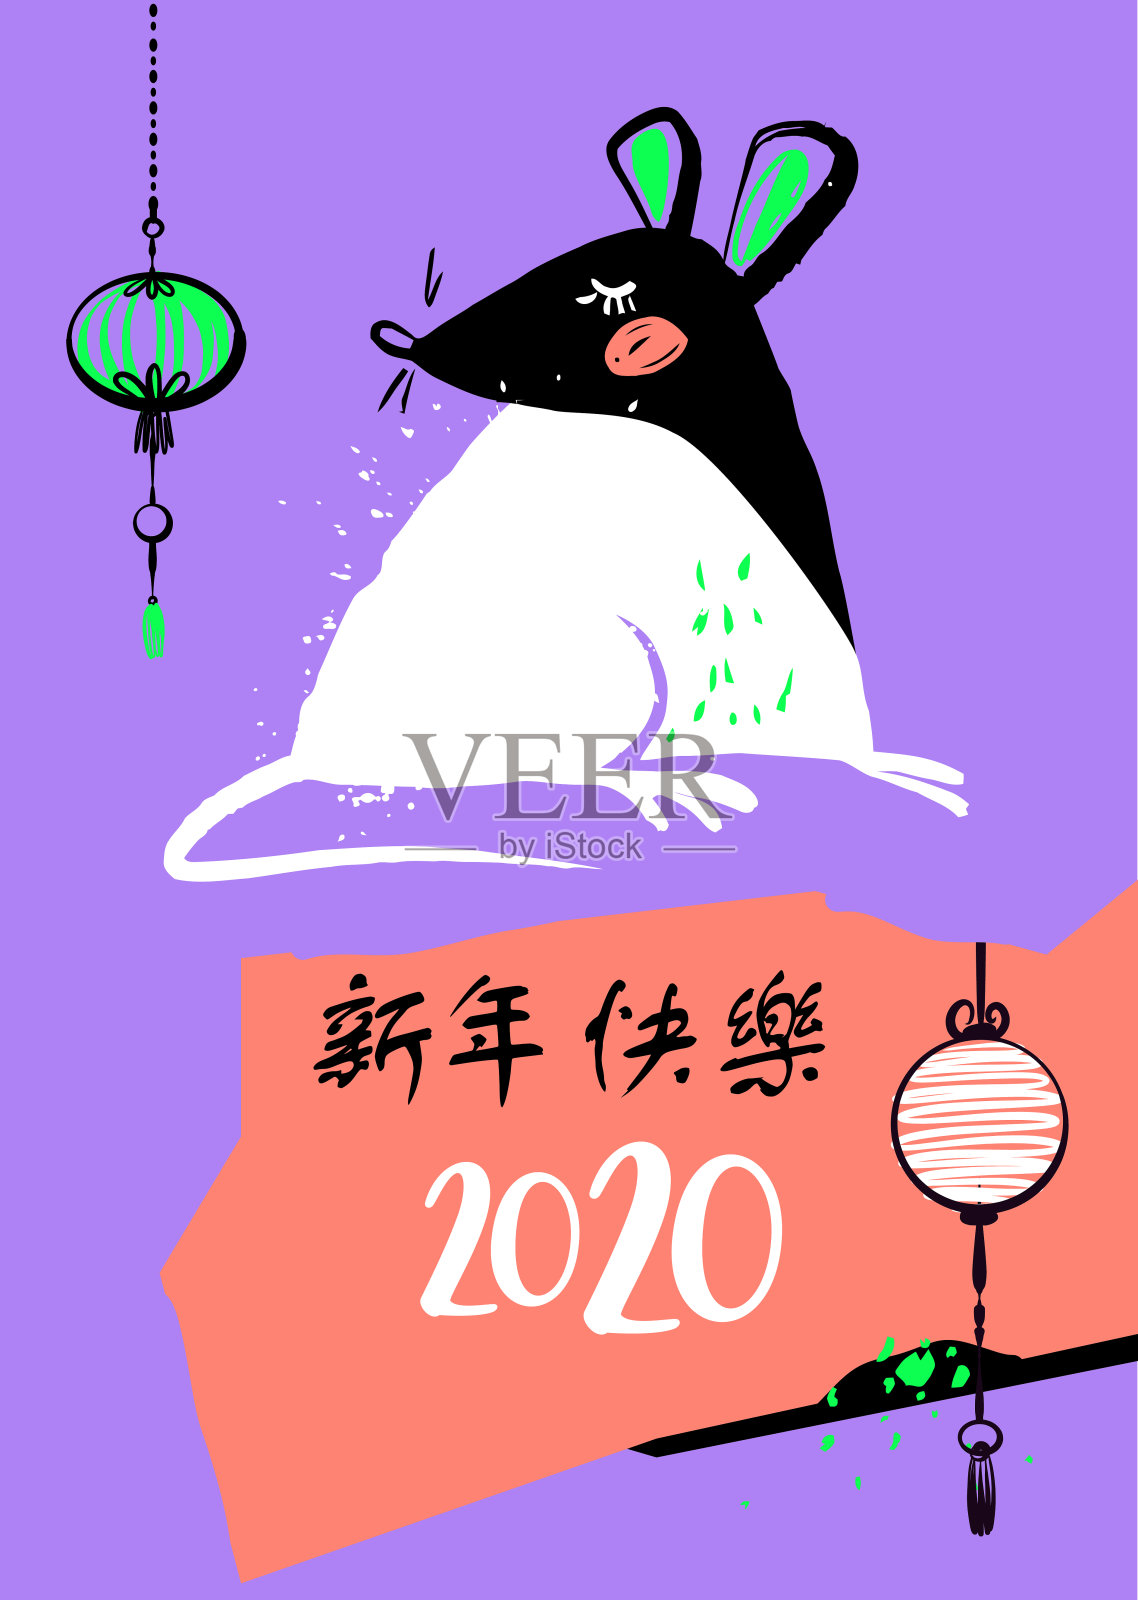 中国人2020年新年快乐。手绘小老鼠剪影，老鼠。月亮星座的迹象。象形翻译鼠标，新年快乐。模板横幅，海报，传单。向量草图说明插画图片素材